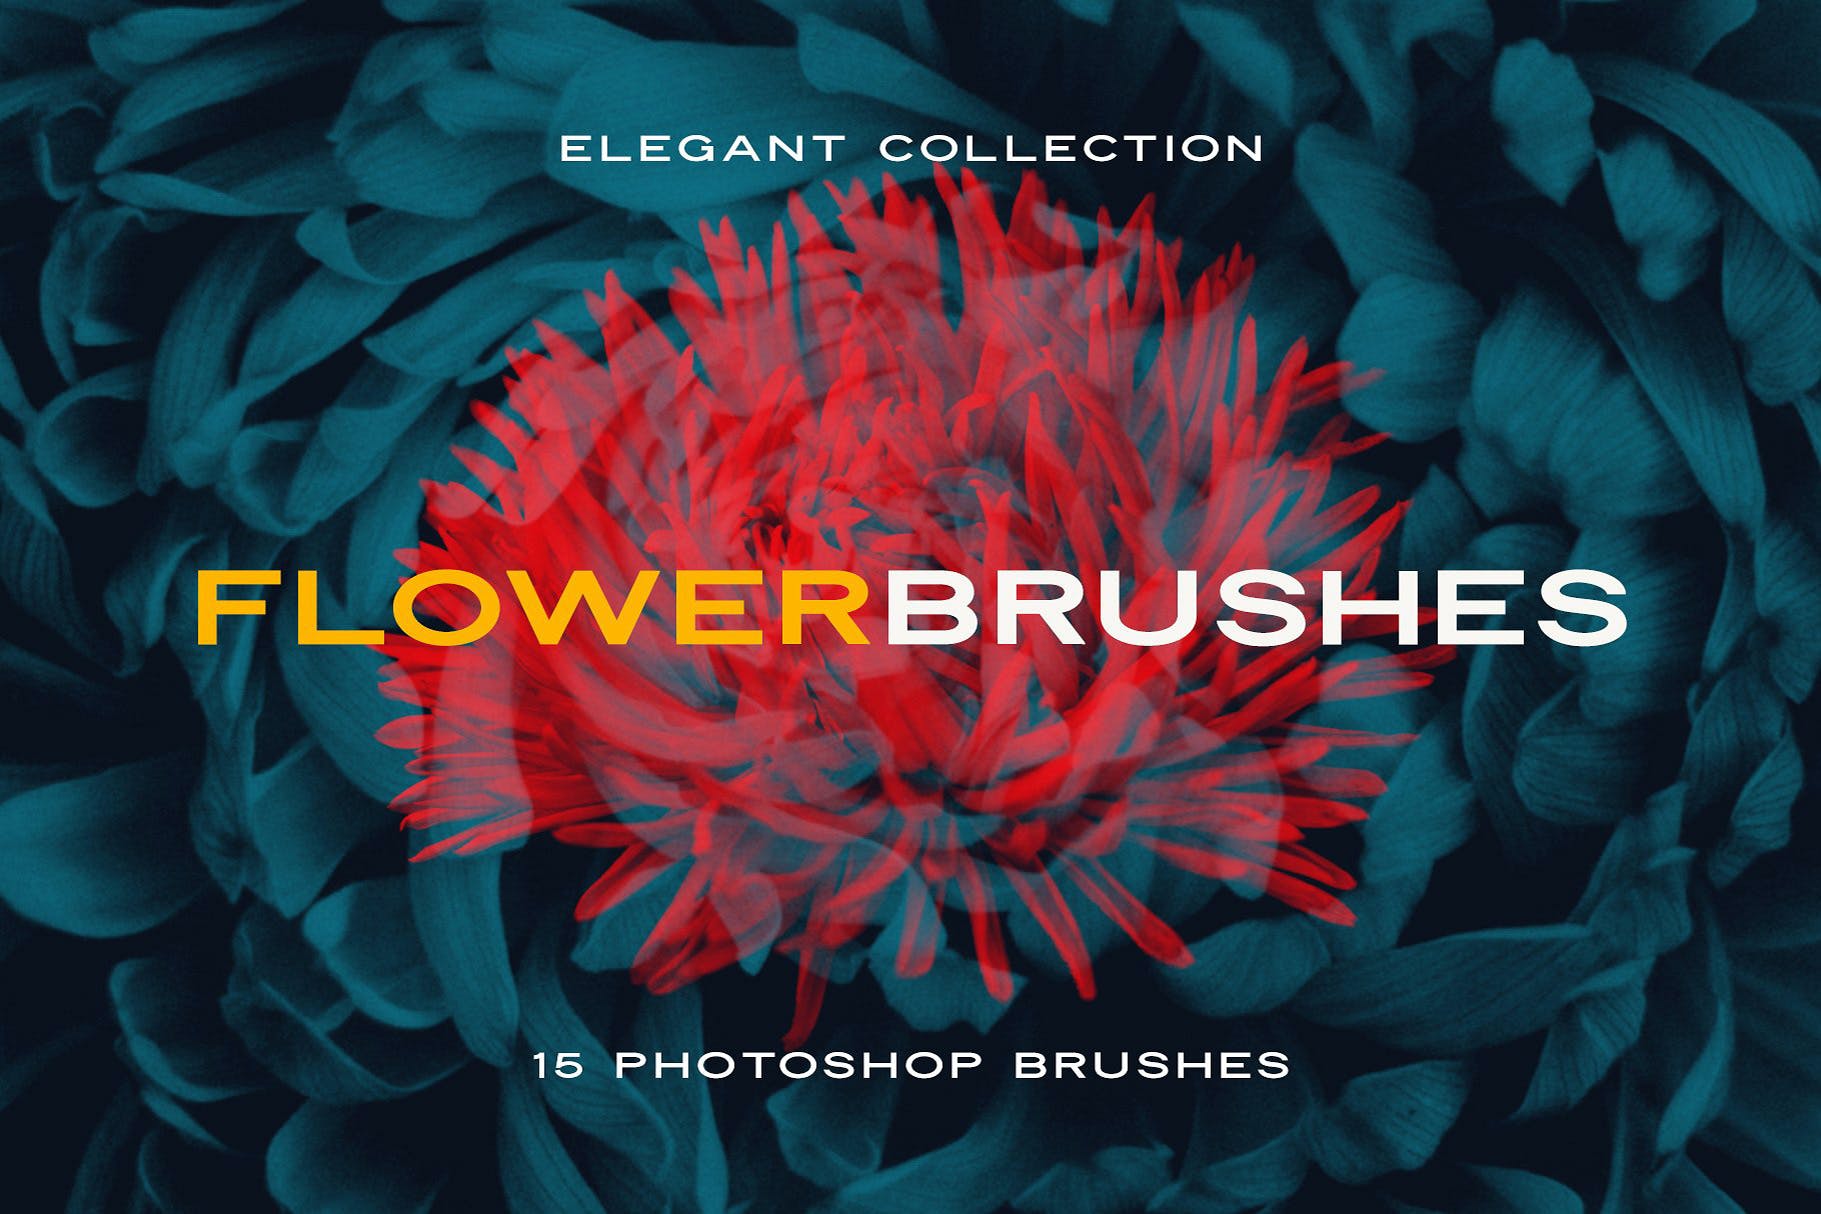 复古风创意玫瑰紫丁香花卉笔刷PS画笔笔刷素材 Elegant Flower Brushes for Photoshop 笔刷资源 第1张